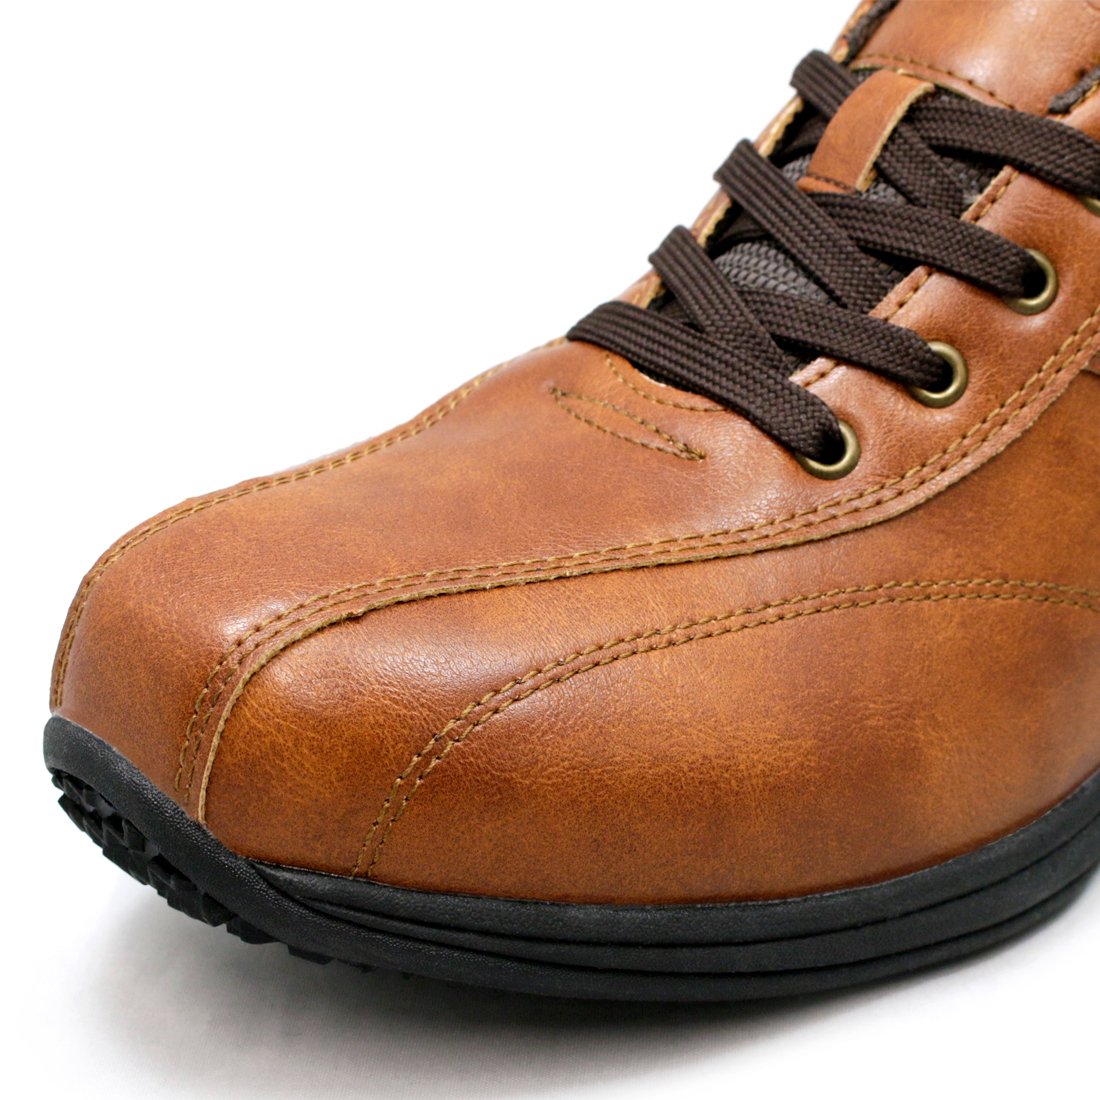 EDWIN 革靴 カジュアルシューズ 防水 ビジネス スニーカー メンズ ウォーキングシューズ ファスナー開閉 紐靴 紳士靴 EDWIN エドウィン  edm457